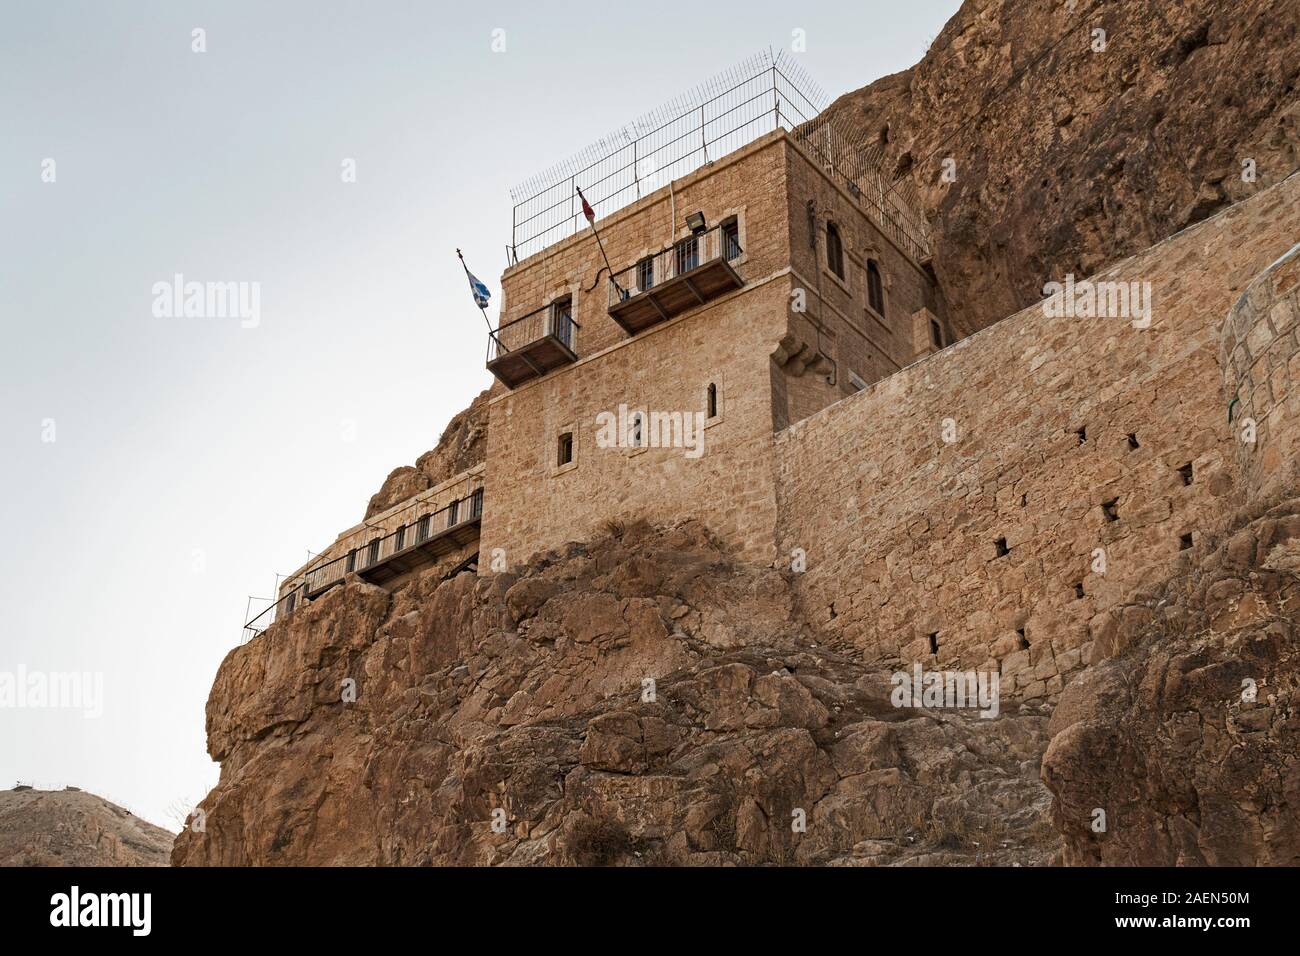 Una sezione del monastero di tentazione costruita nelle pareti rocciose a strapiombo sul Monte della tentazione in Gerico antica nella west bank PALESTINA Foto Stock